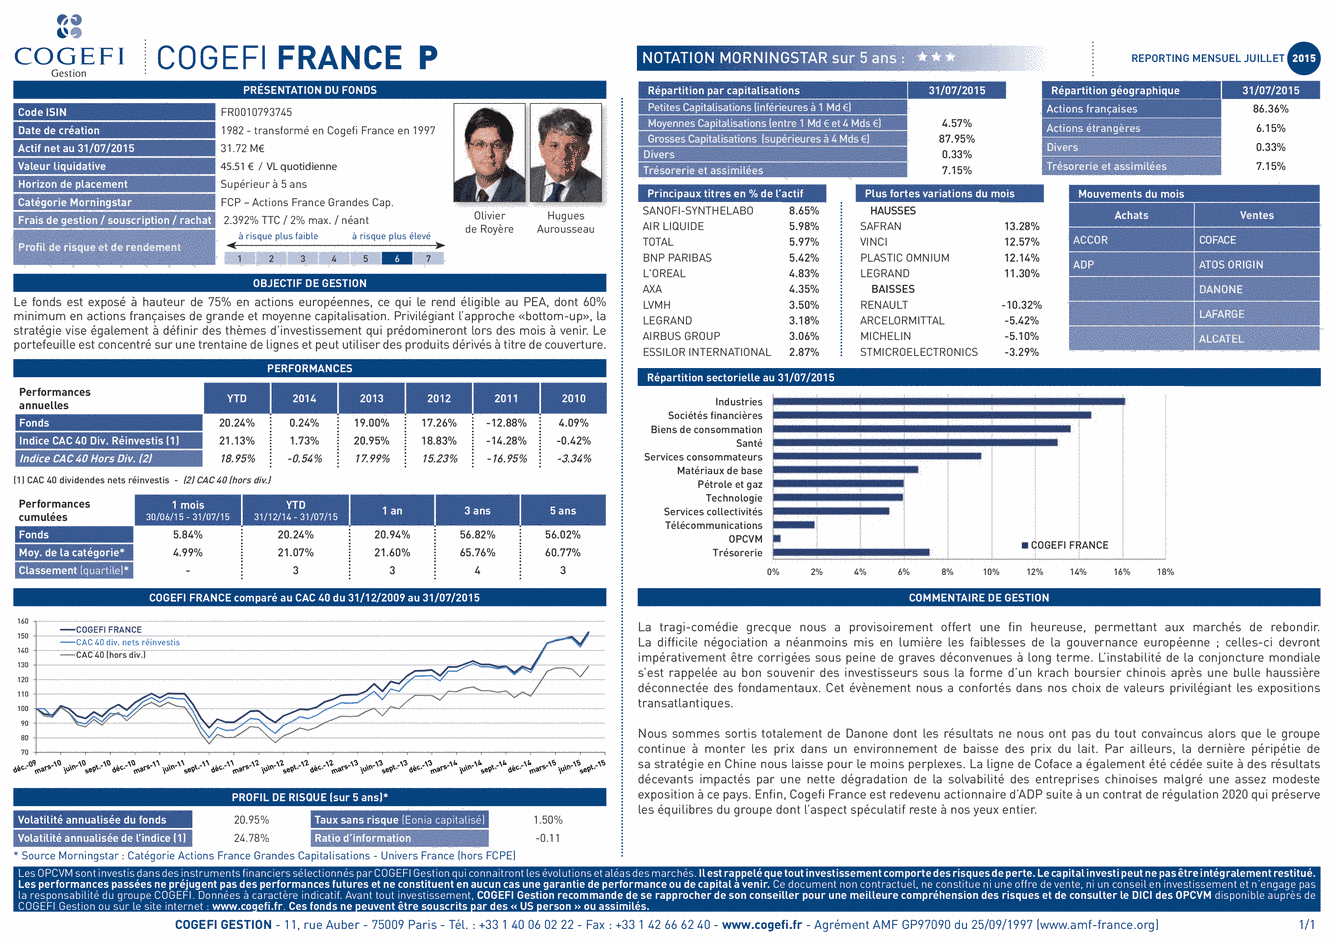 Fiche Produit Cogefi France - 31/07/2015 - Français